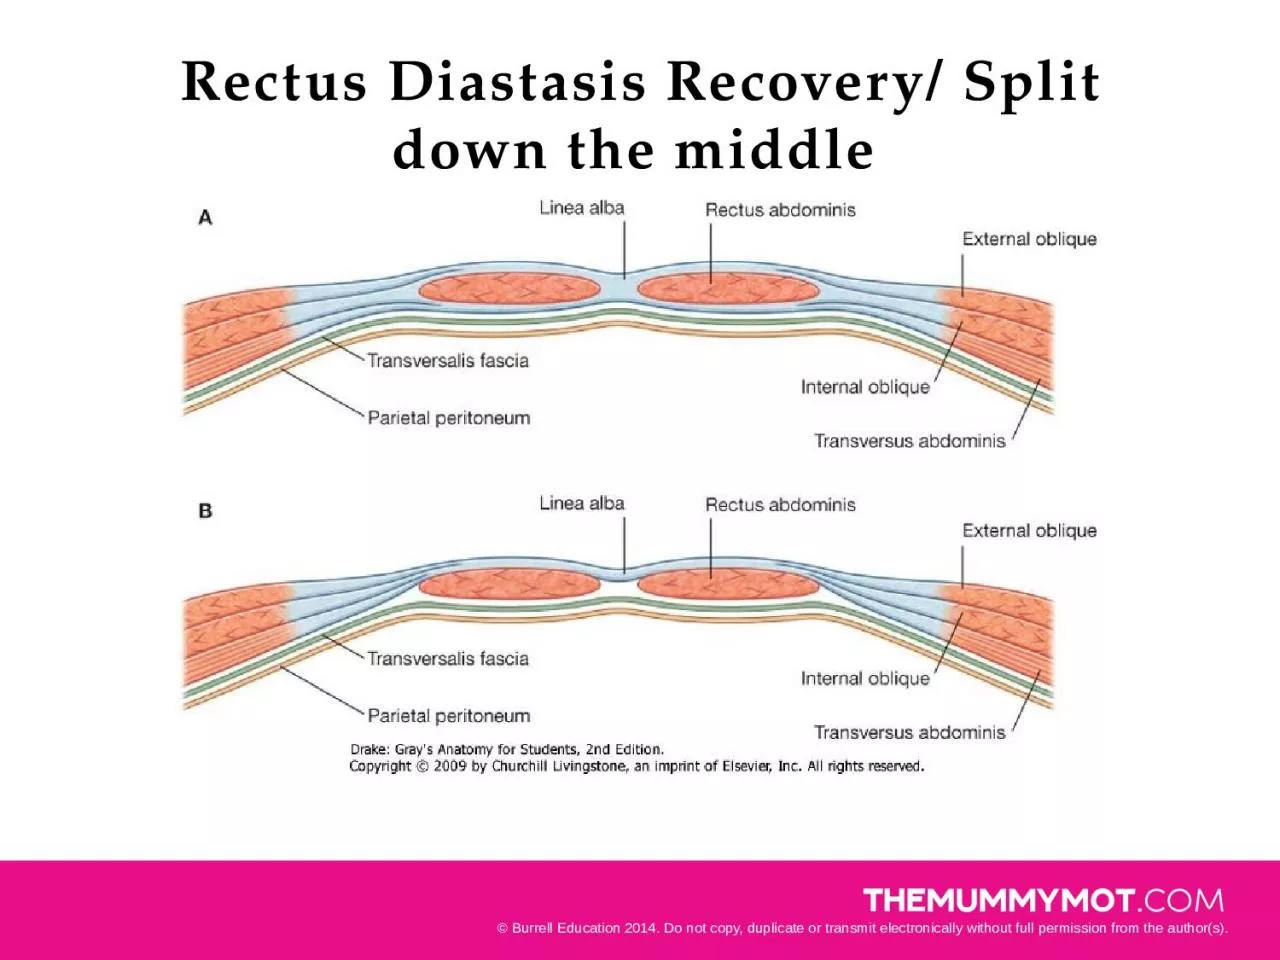 Rectus Diastasis Recovery/ Split down the middle